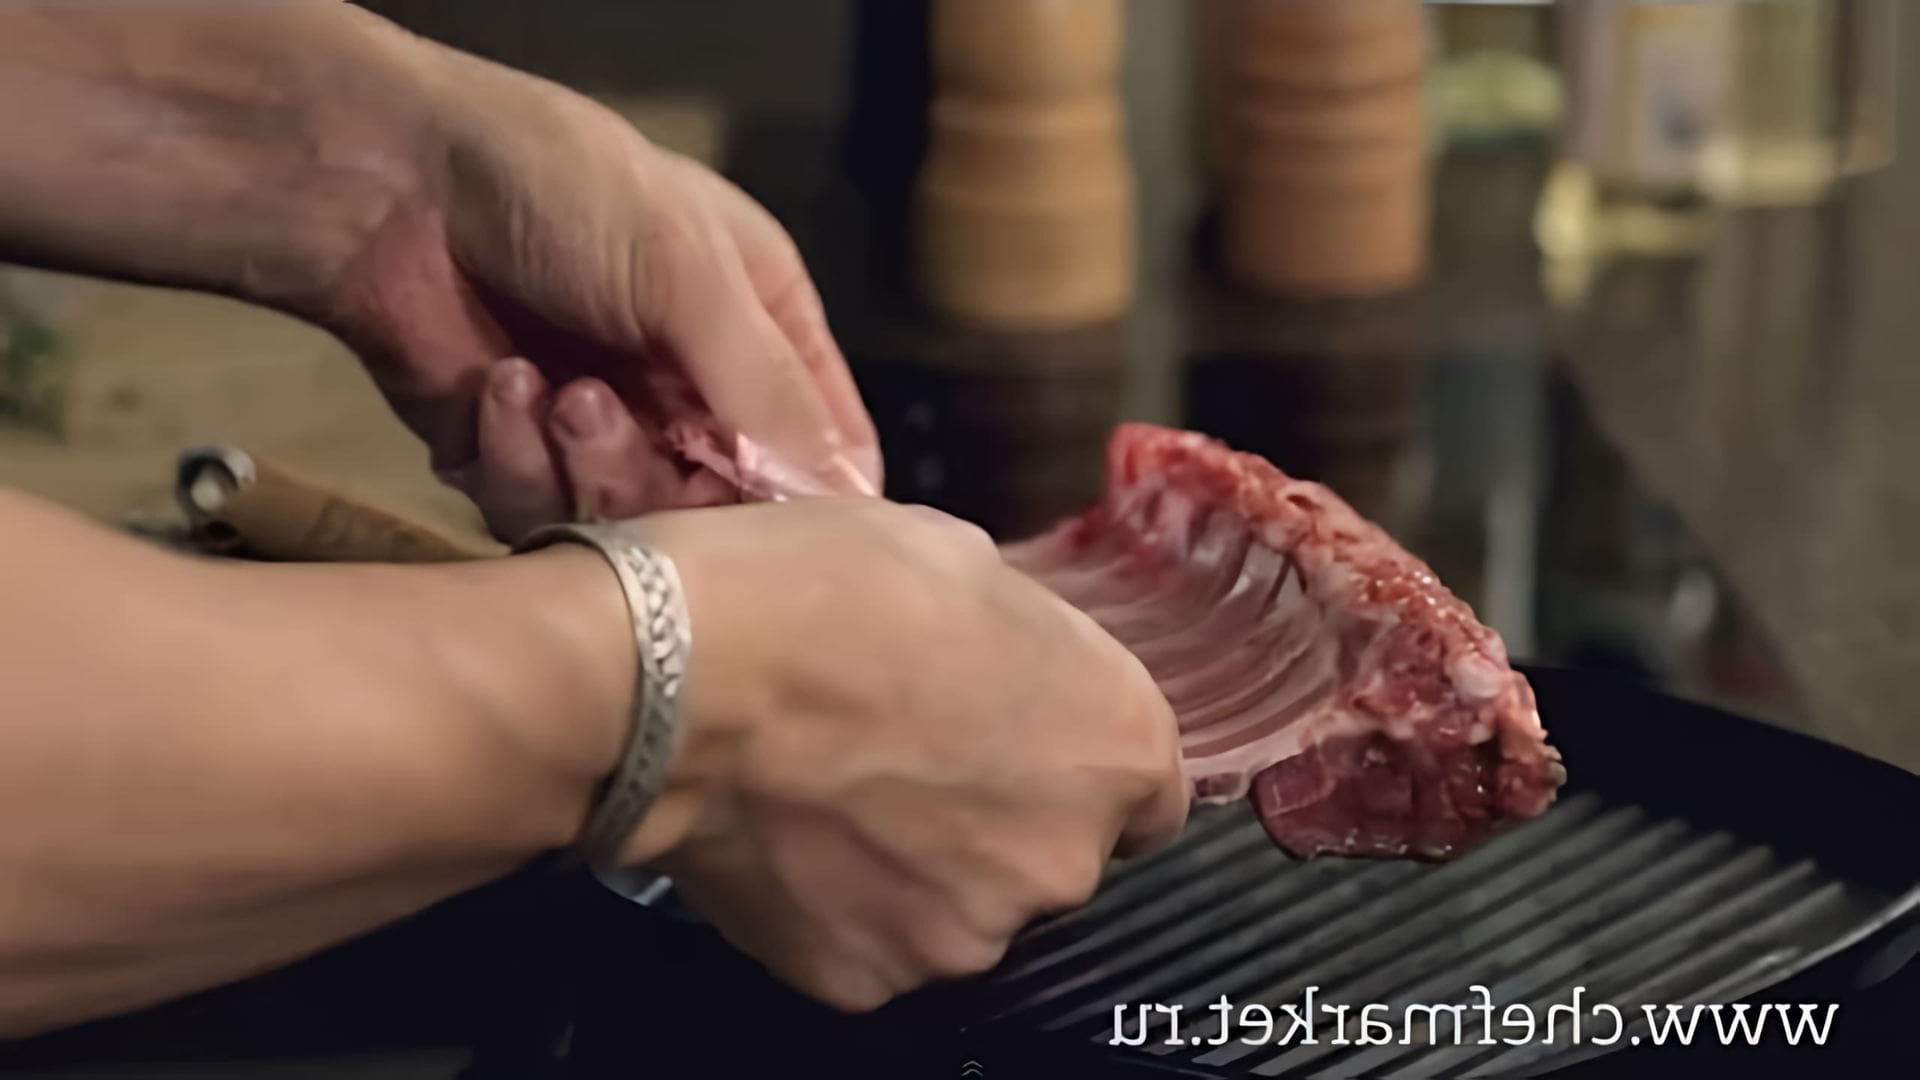 В этом видео шеф-повар показывает, как приготовить каре ягненка